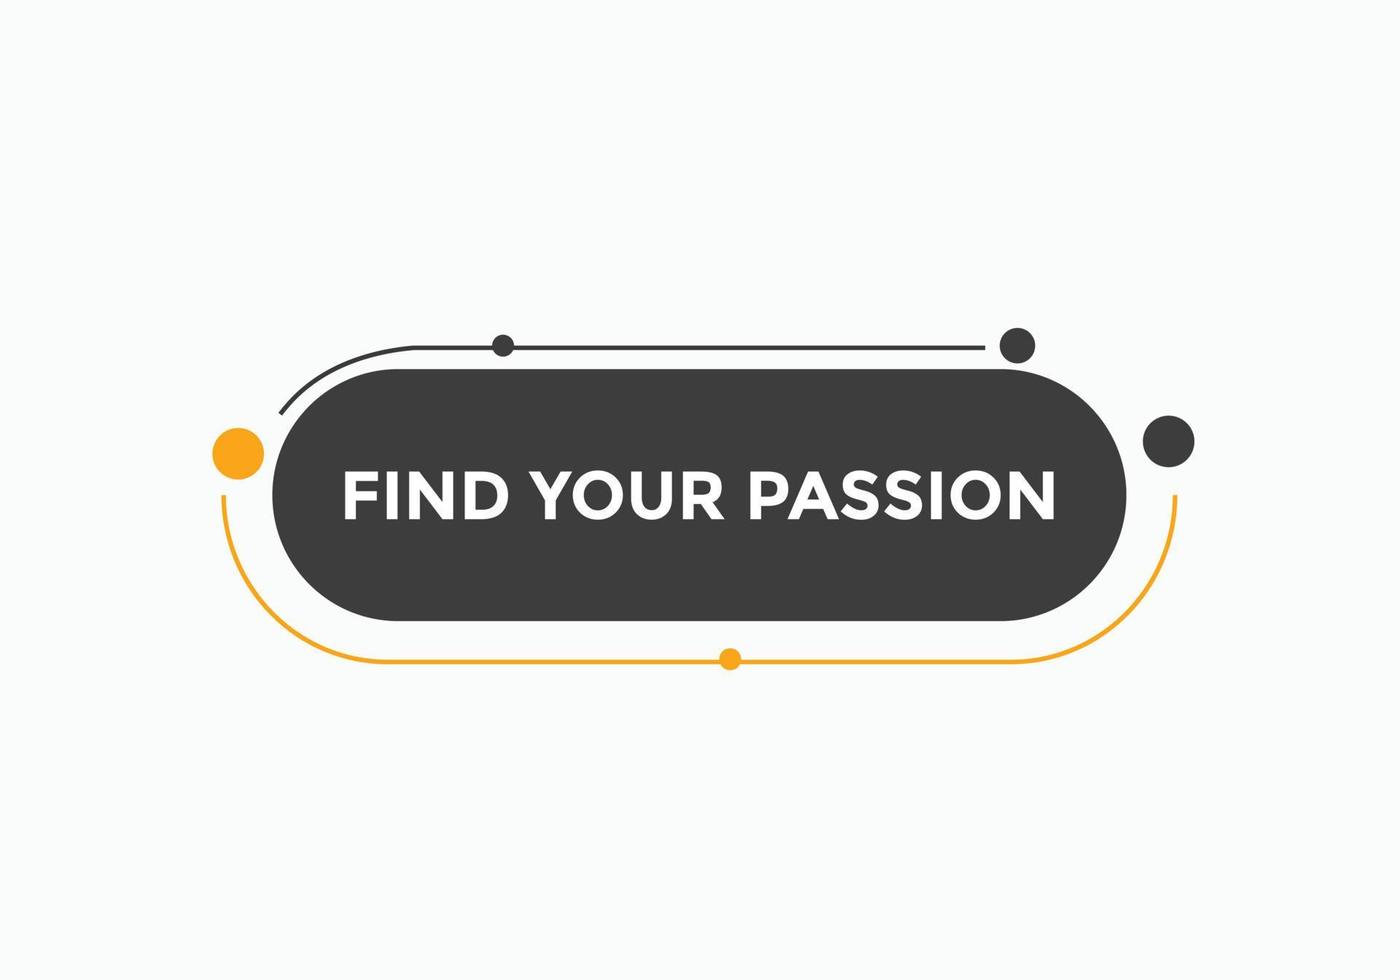 trouvez votre bouton de passion. trouvez votre bulle de dialogue de signe de passion. modèle d'étiquette de bannière web. illustration vectorielle vecteur